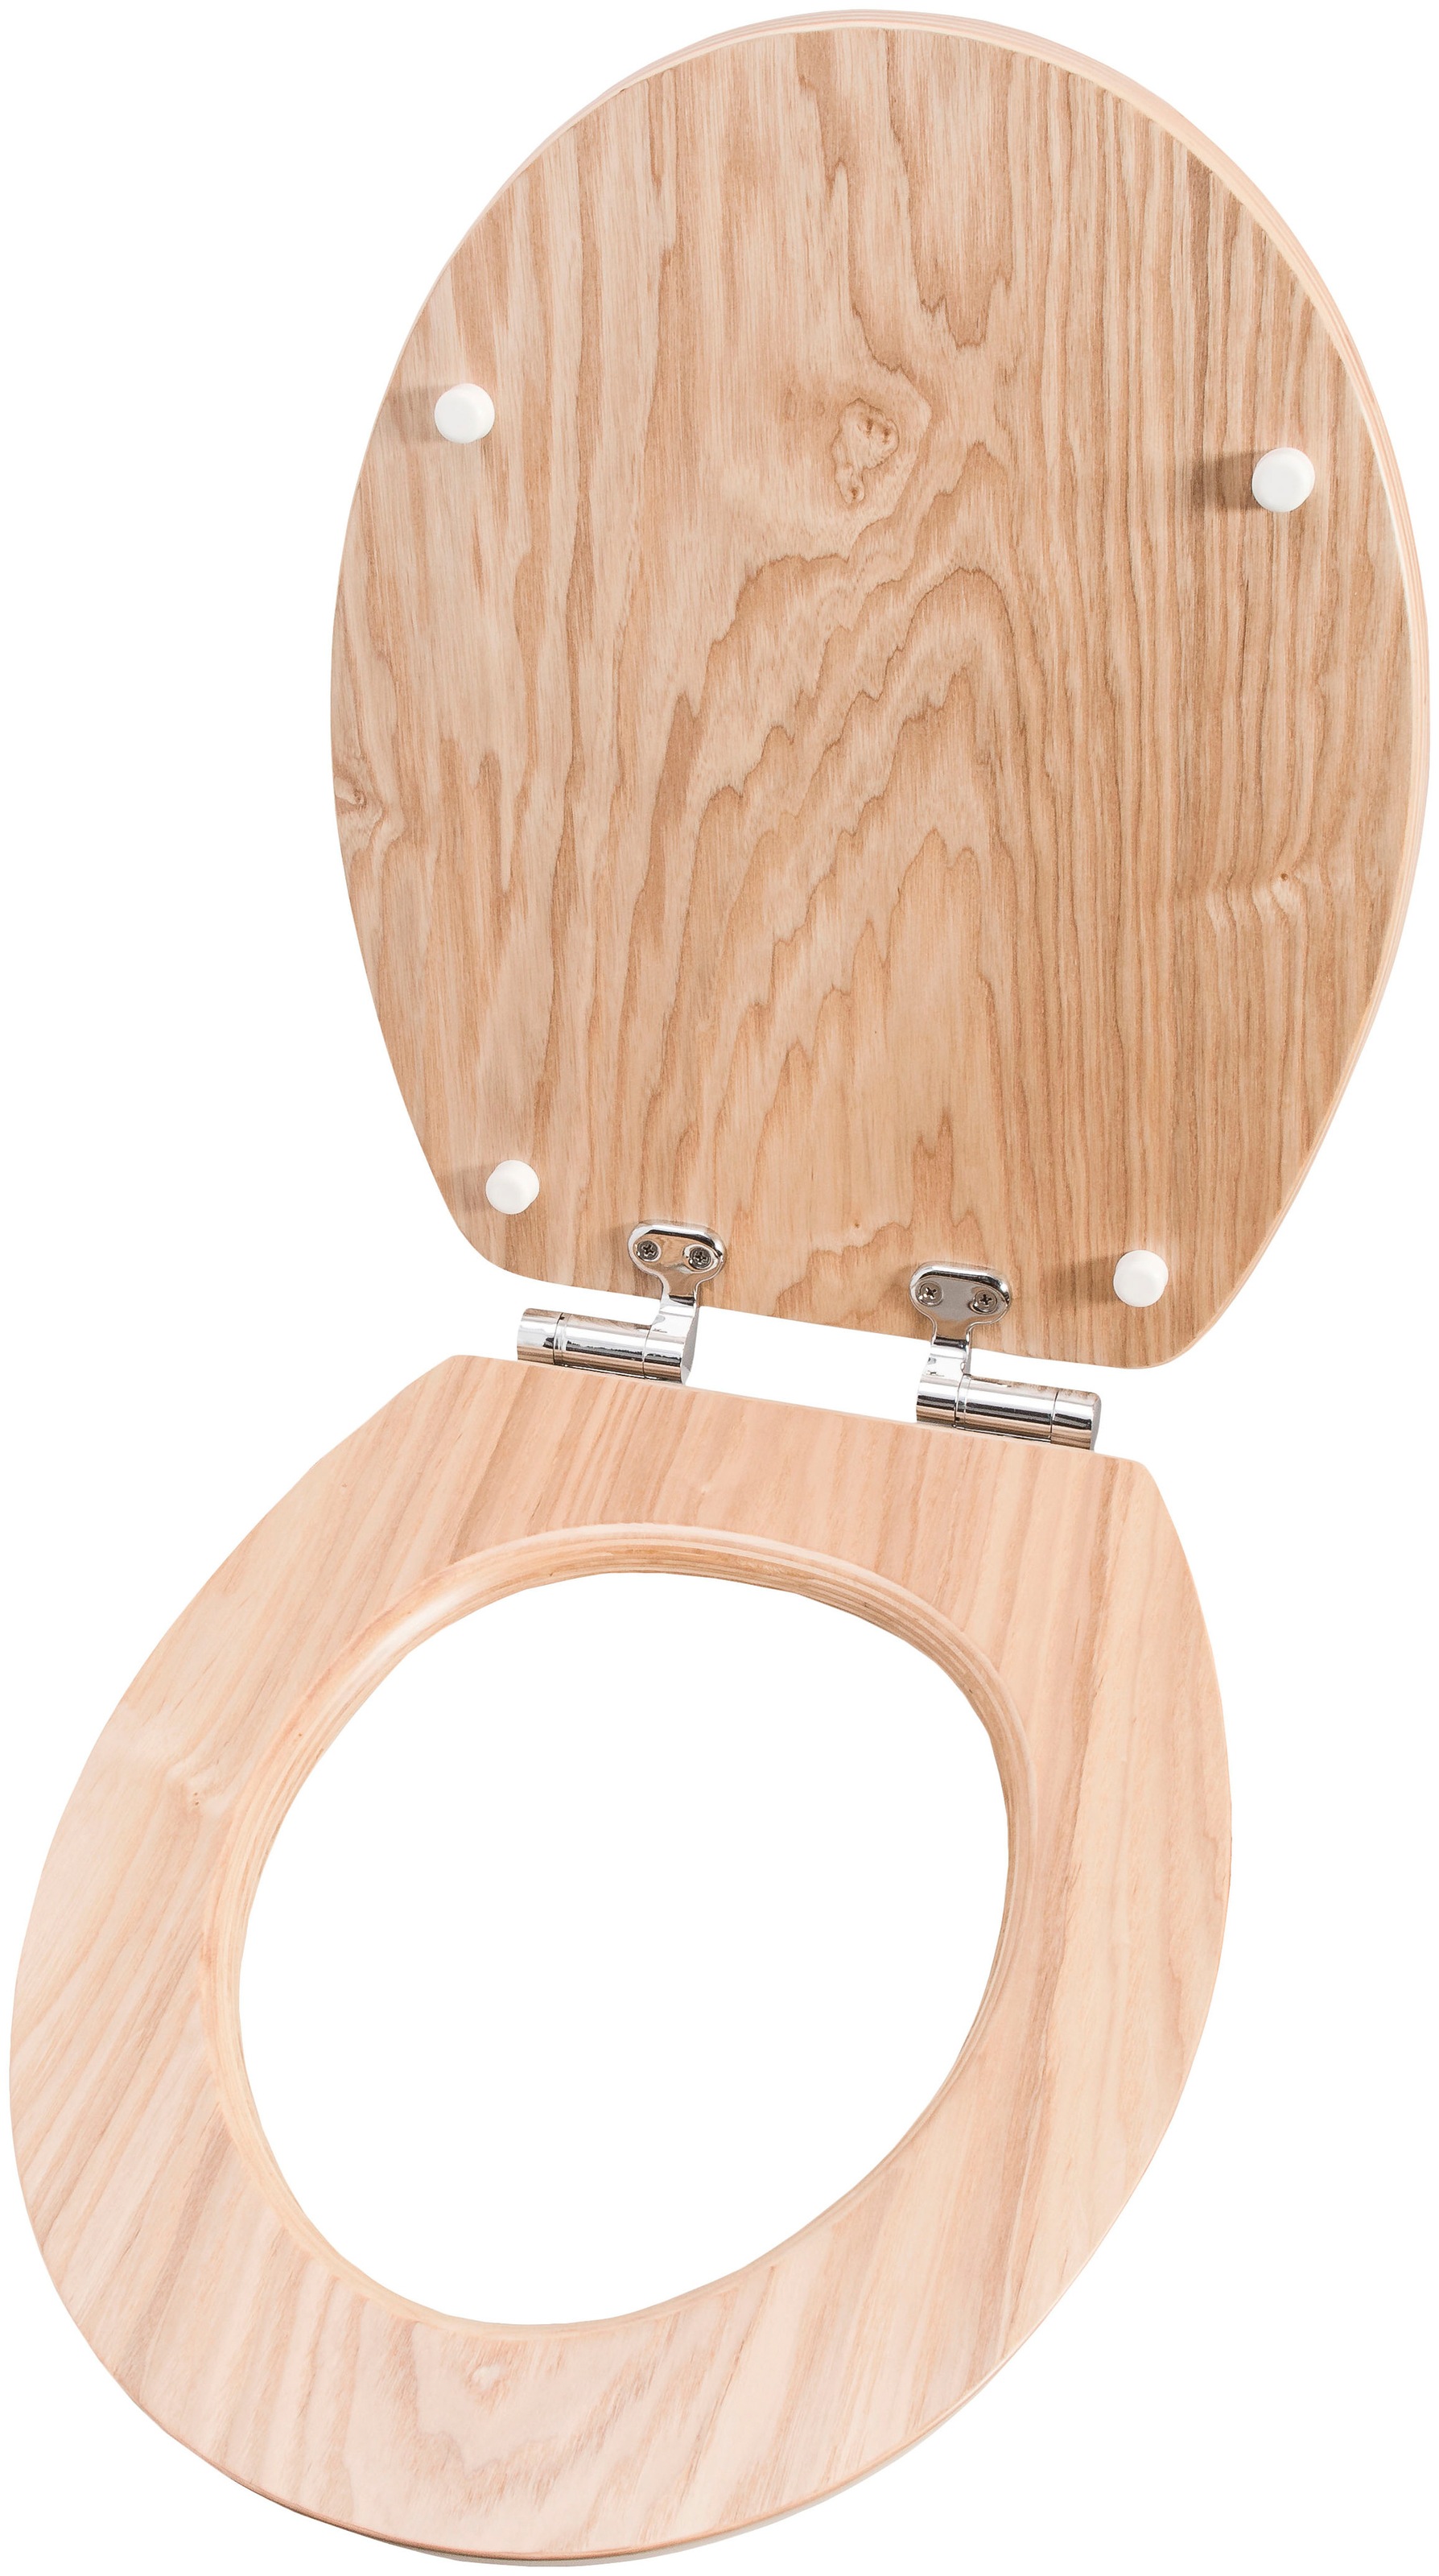 CORNAT WC-Sitz »Hochwertiges Echtholz - Eiche - Komfortables Sitzgefühl«, Absenkautomatik - Edle Holz-Optik passt in jedes Badezimmer